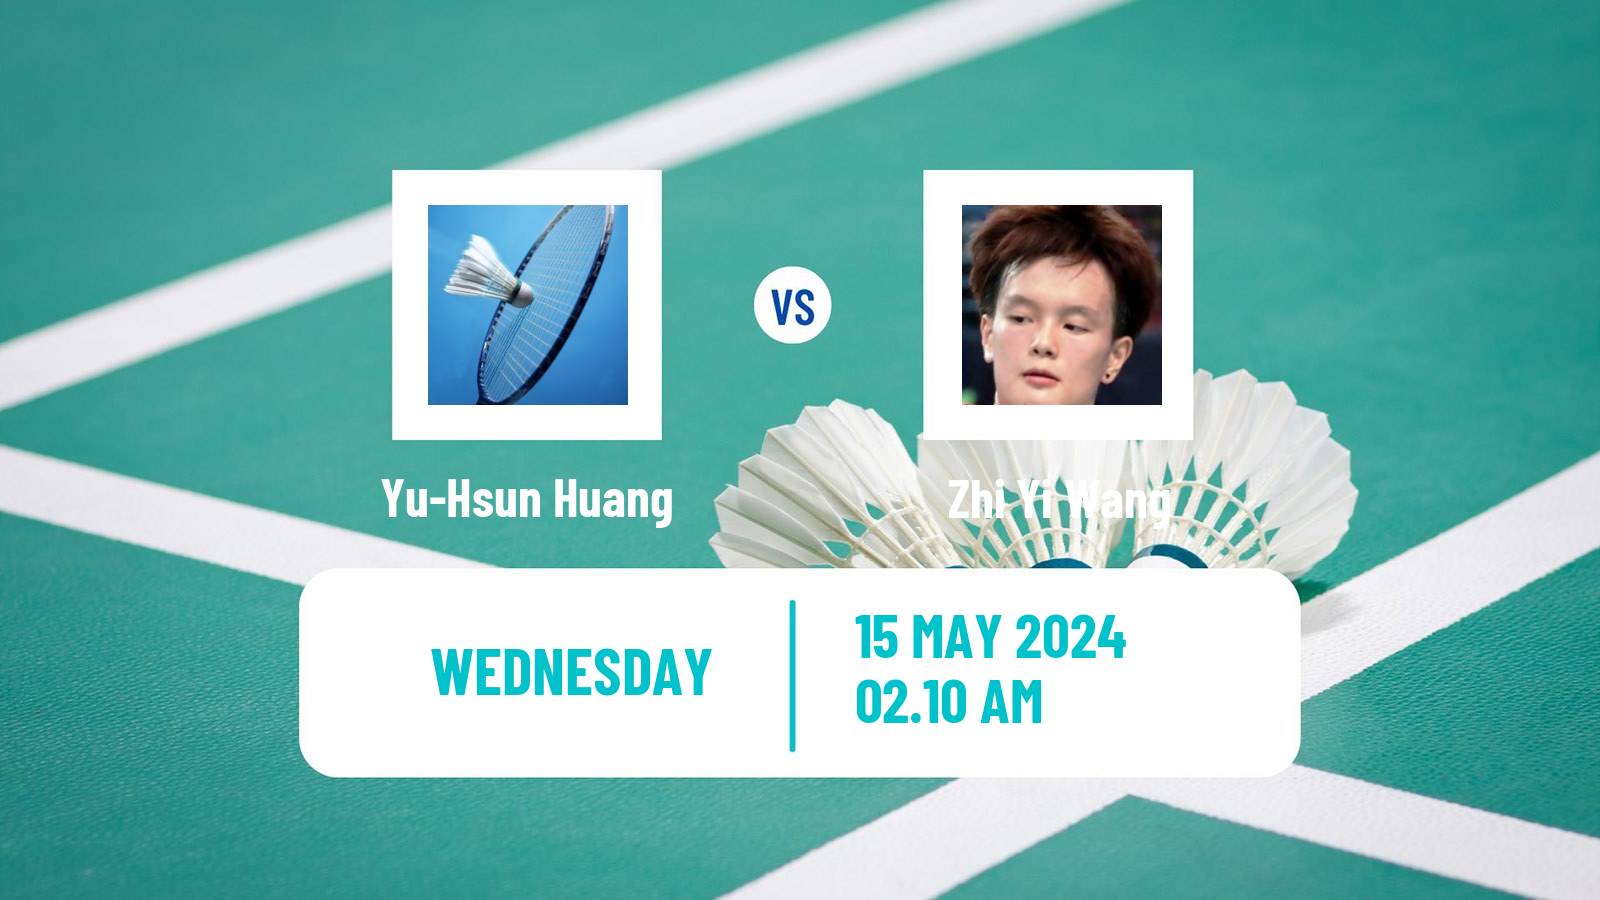 Badminton BWF World Tour Thailand Open Women Yu-Hsun Huang - Zhi Yi Wang